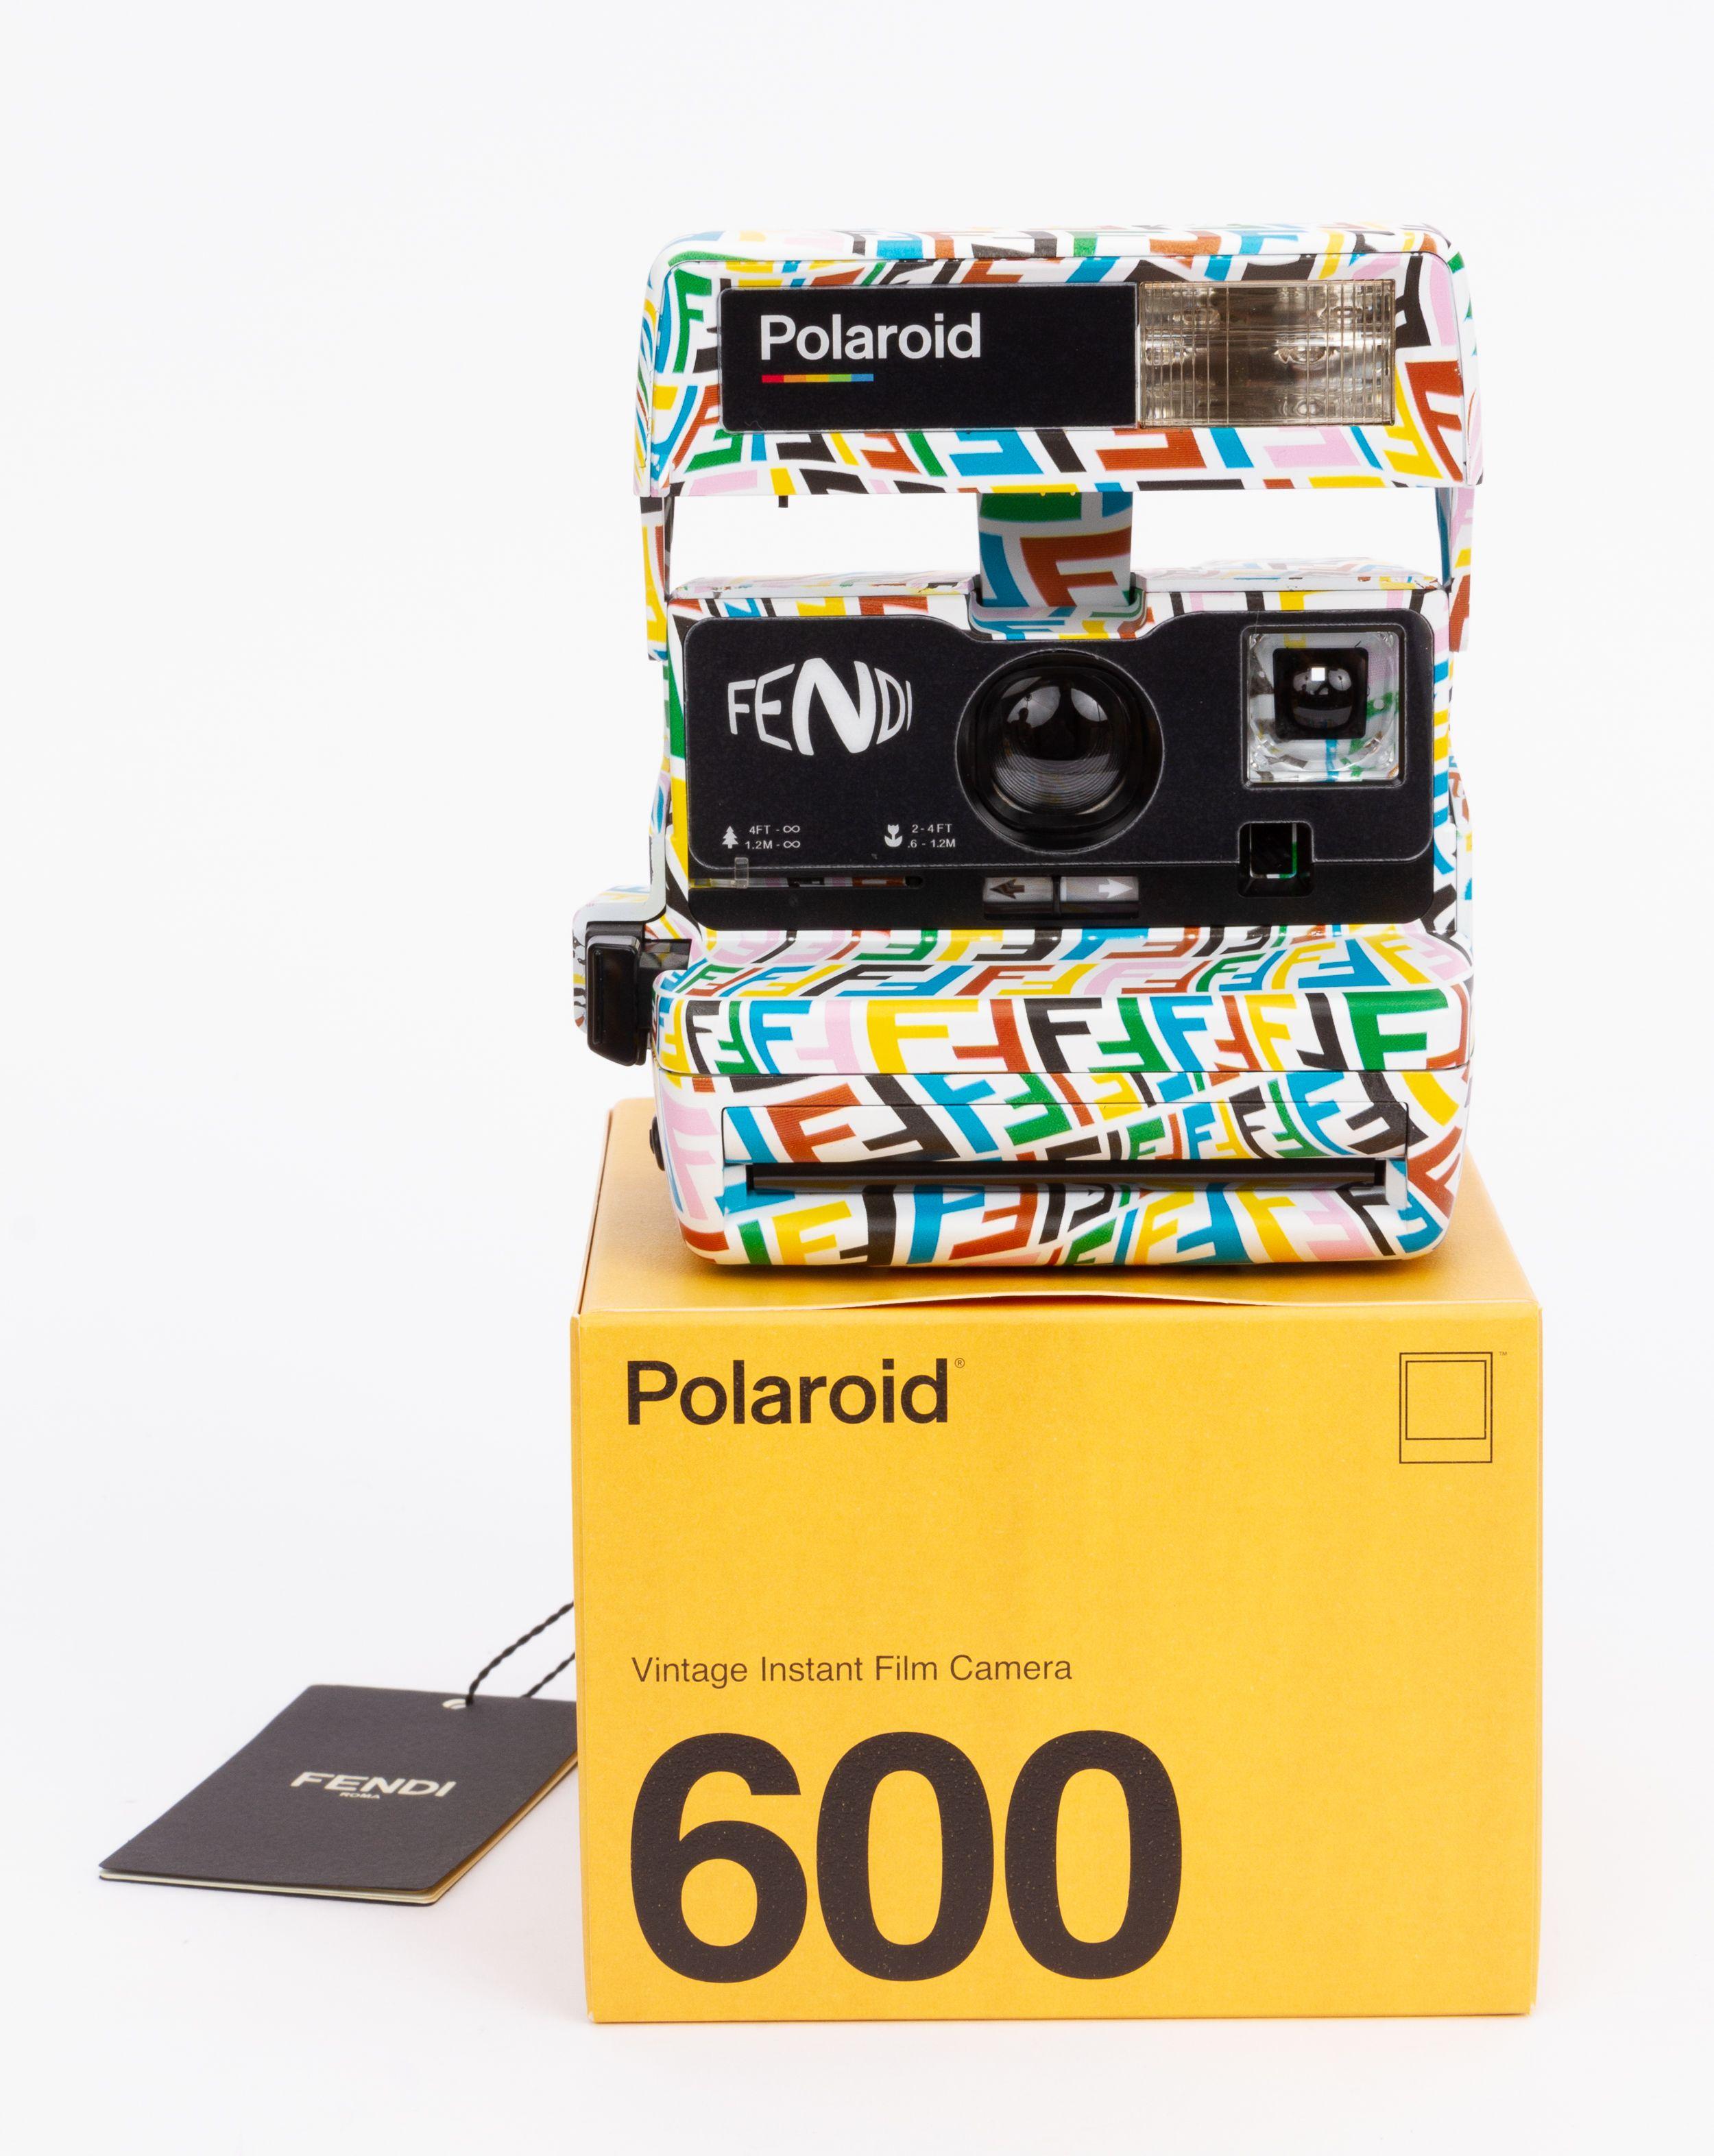 2000s polaroid camera